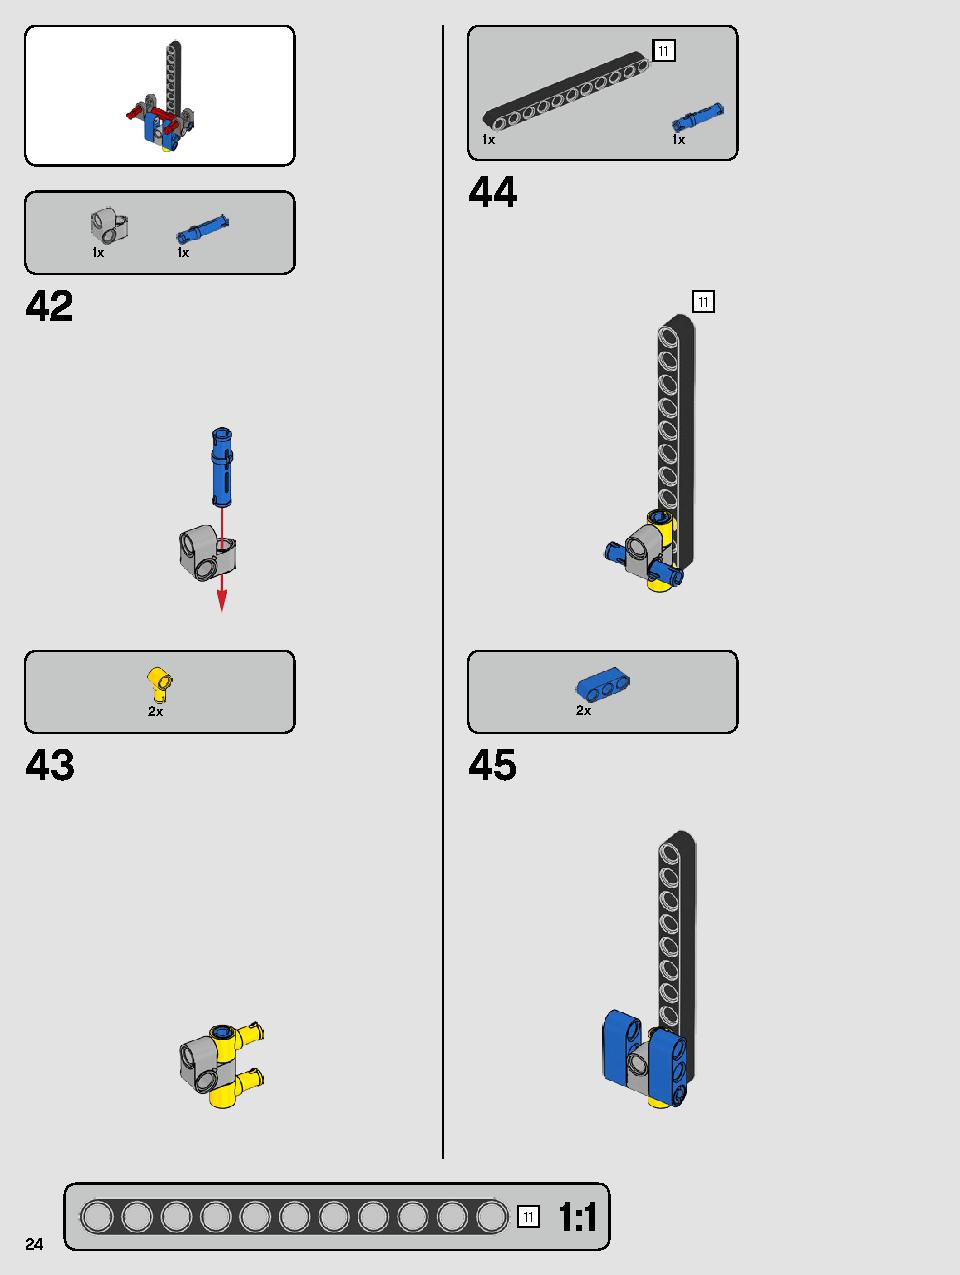 ヨーダ™ 75255 レゴの商品情報 レゴの説明書・組立方法 24 page